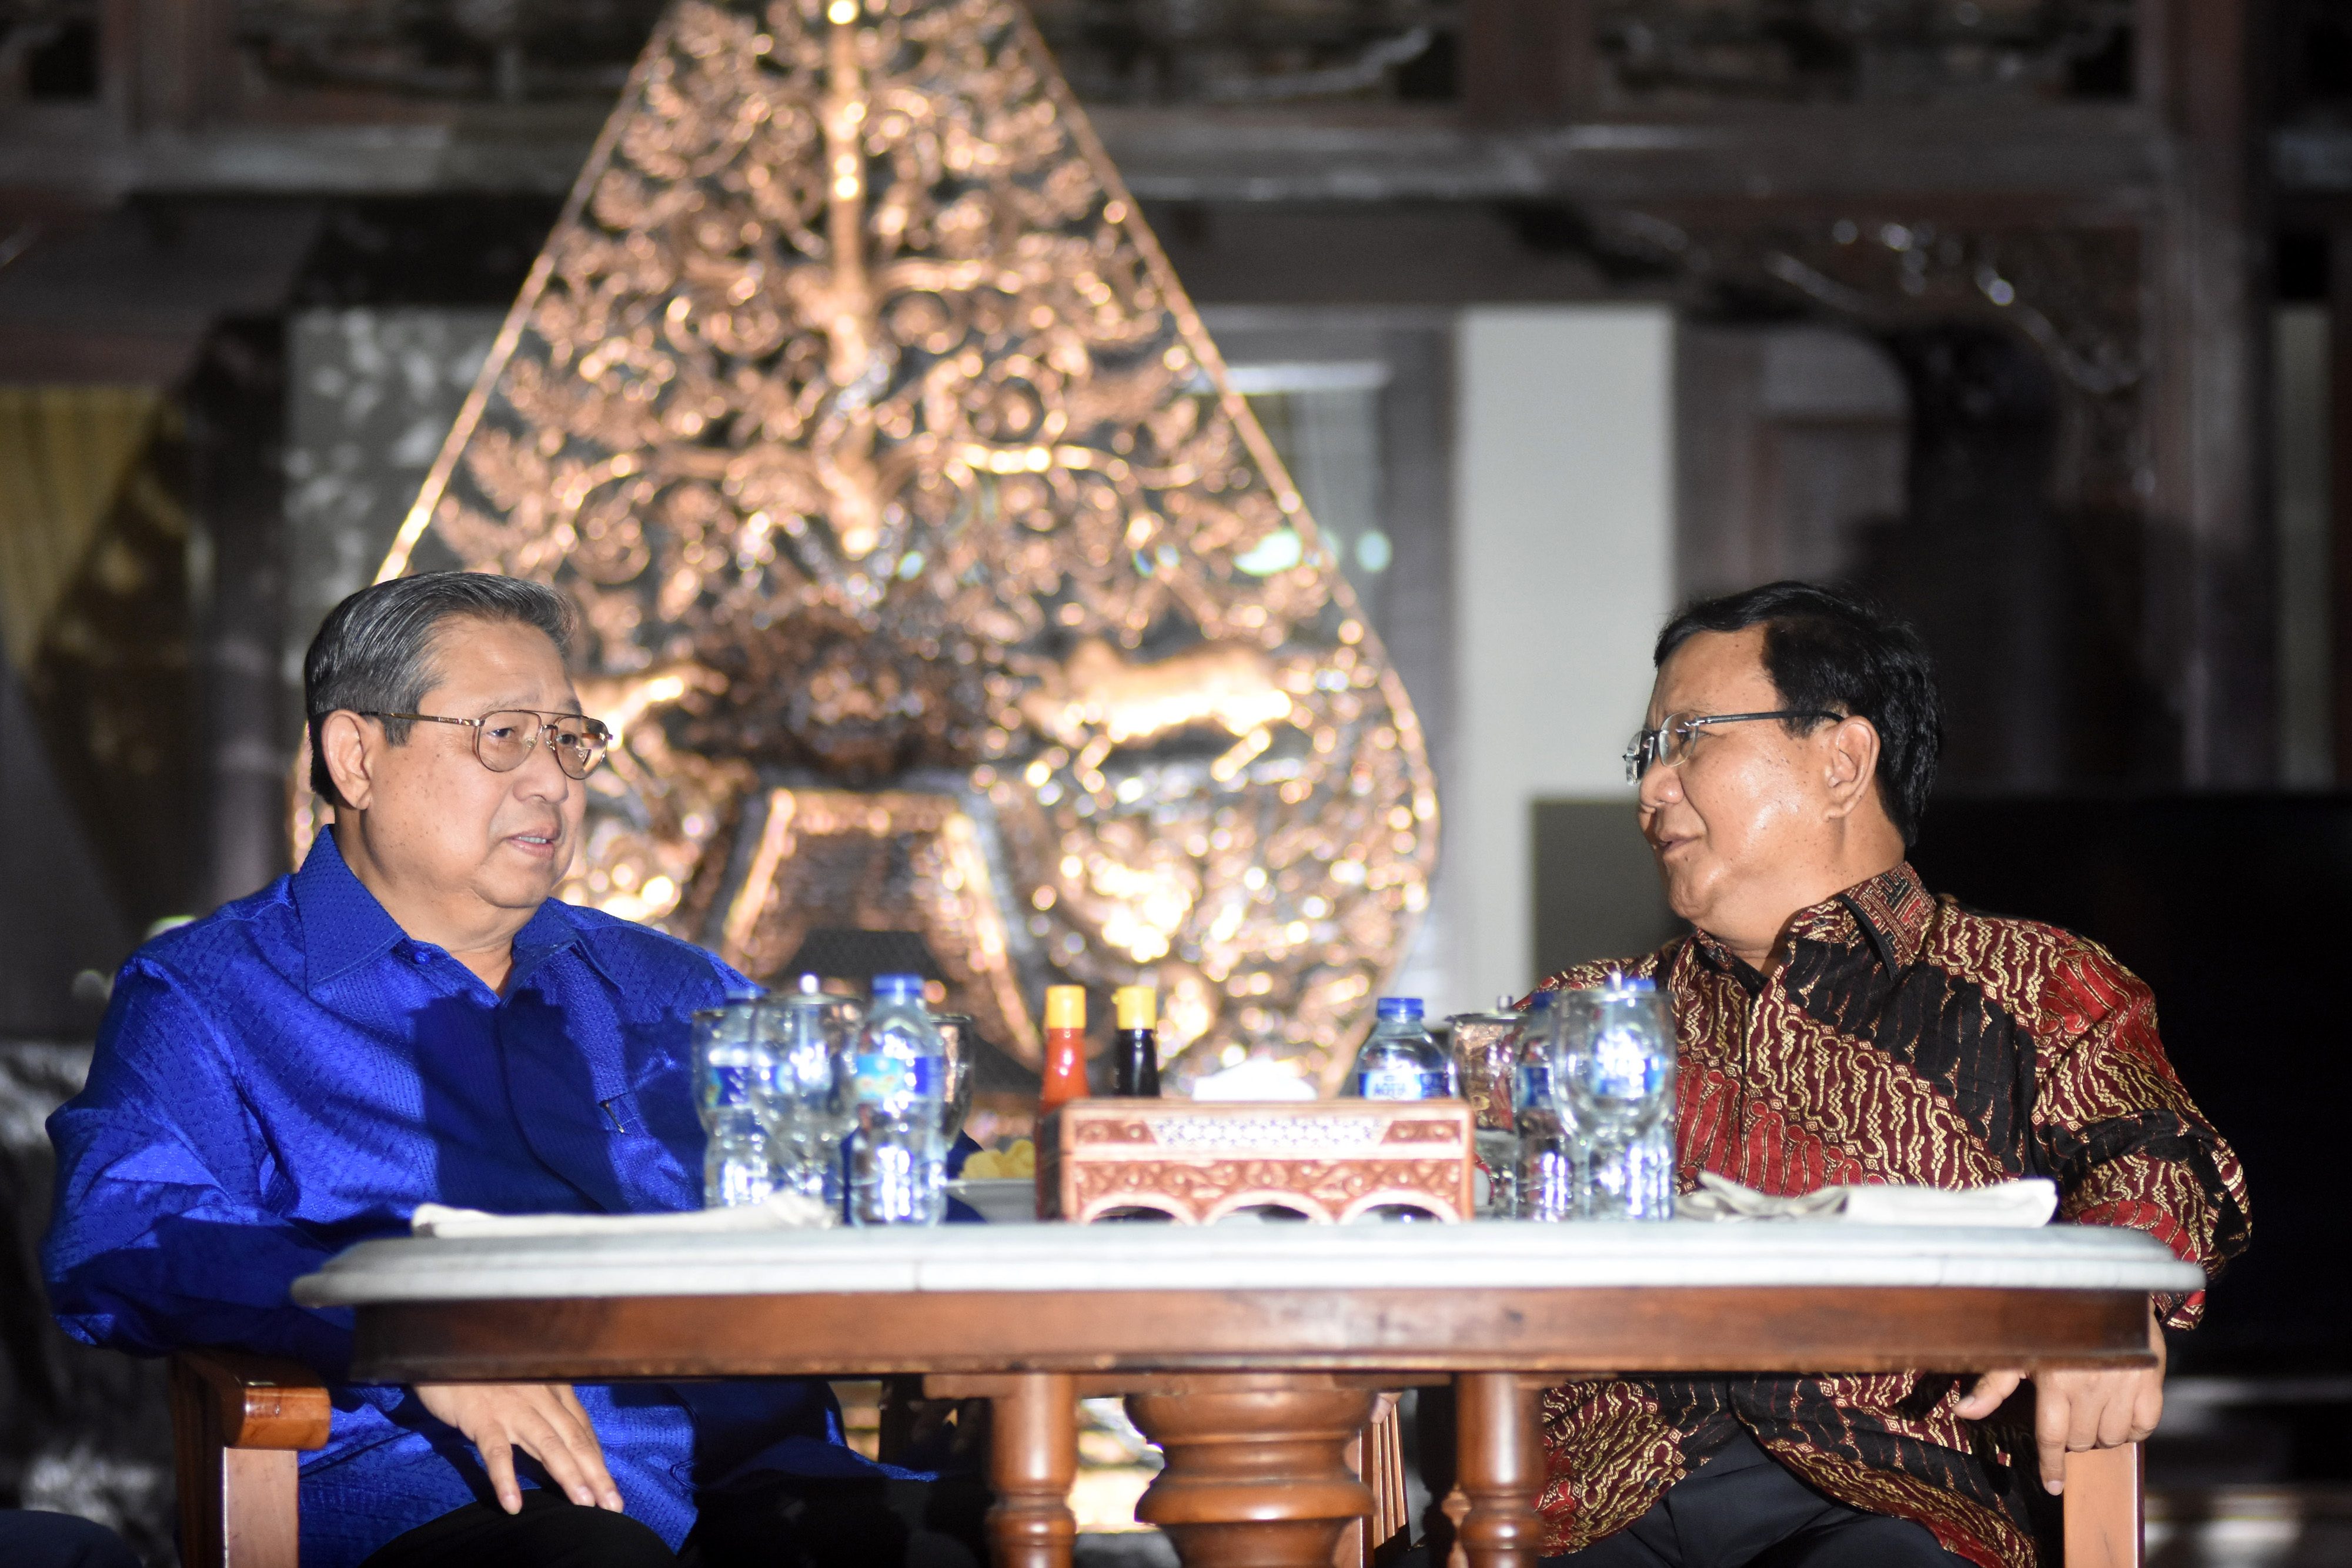 BERBINCANG. Ketua Umum Partai Demokrat Susilo Bambang Yudhoyono (kiri) berbincang dengan Ketua Umum Partai Gerindra Prabowo Subianto (kanan) sebelum mengadakan pertemuan tertutup di Puri Cikeas, Bogor, Jawa Barat, Kamis, 27 Juli. Foto oleh Indrianto Eko Suwarso/ANTARA 